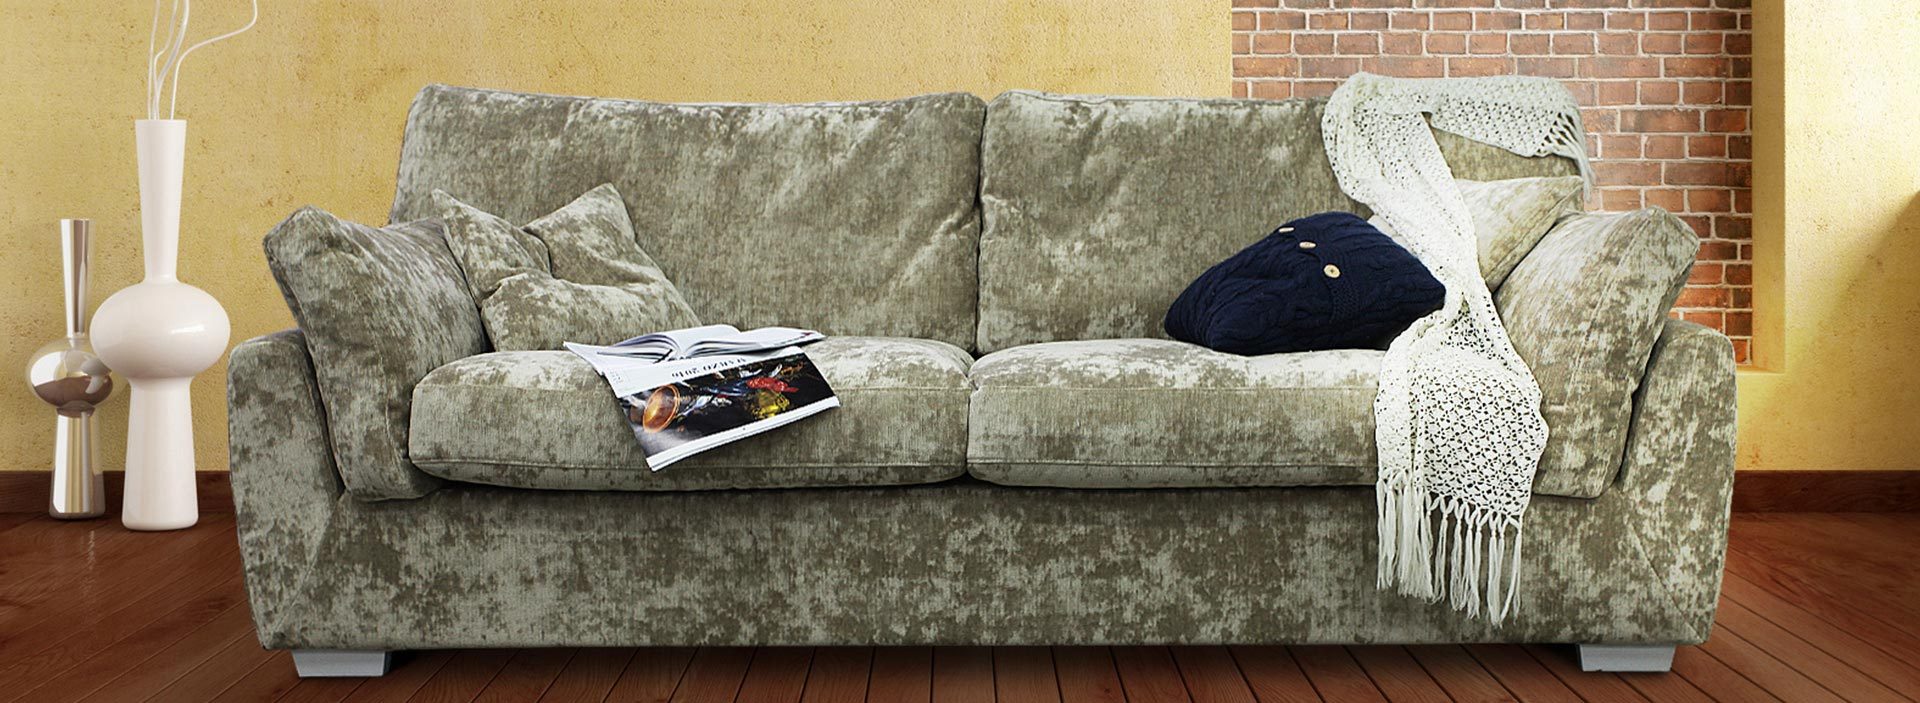 Плюшевый диван в интерьере